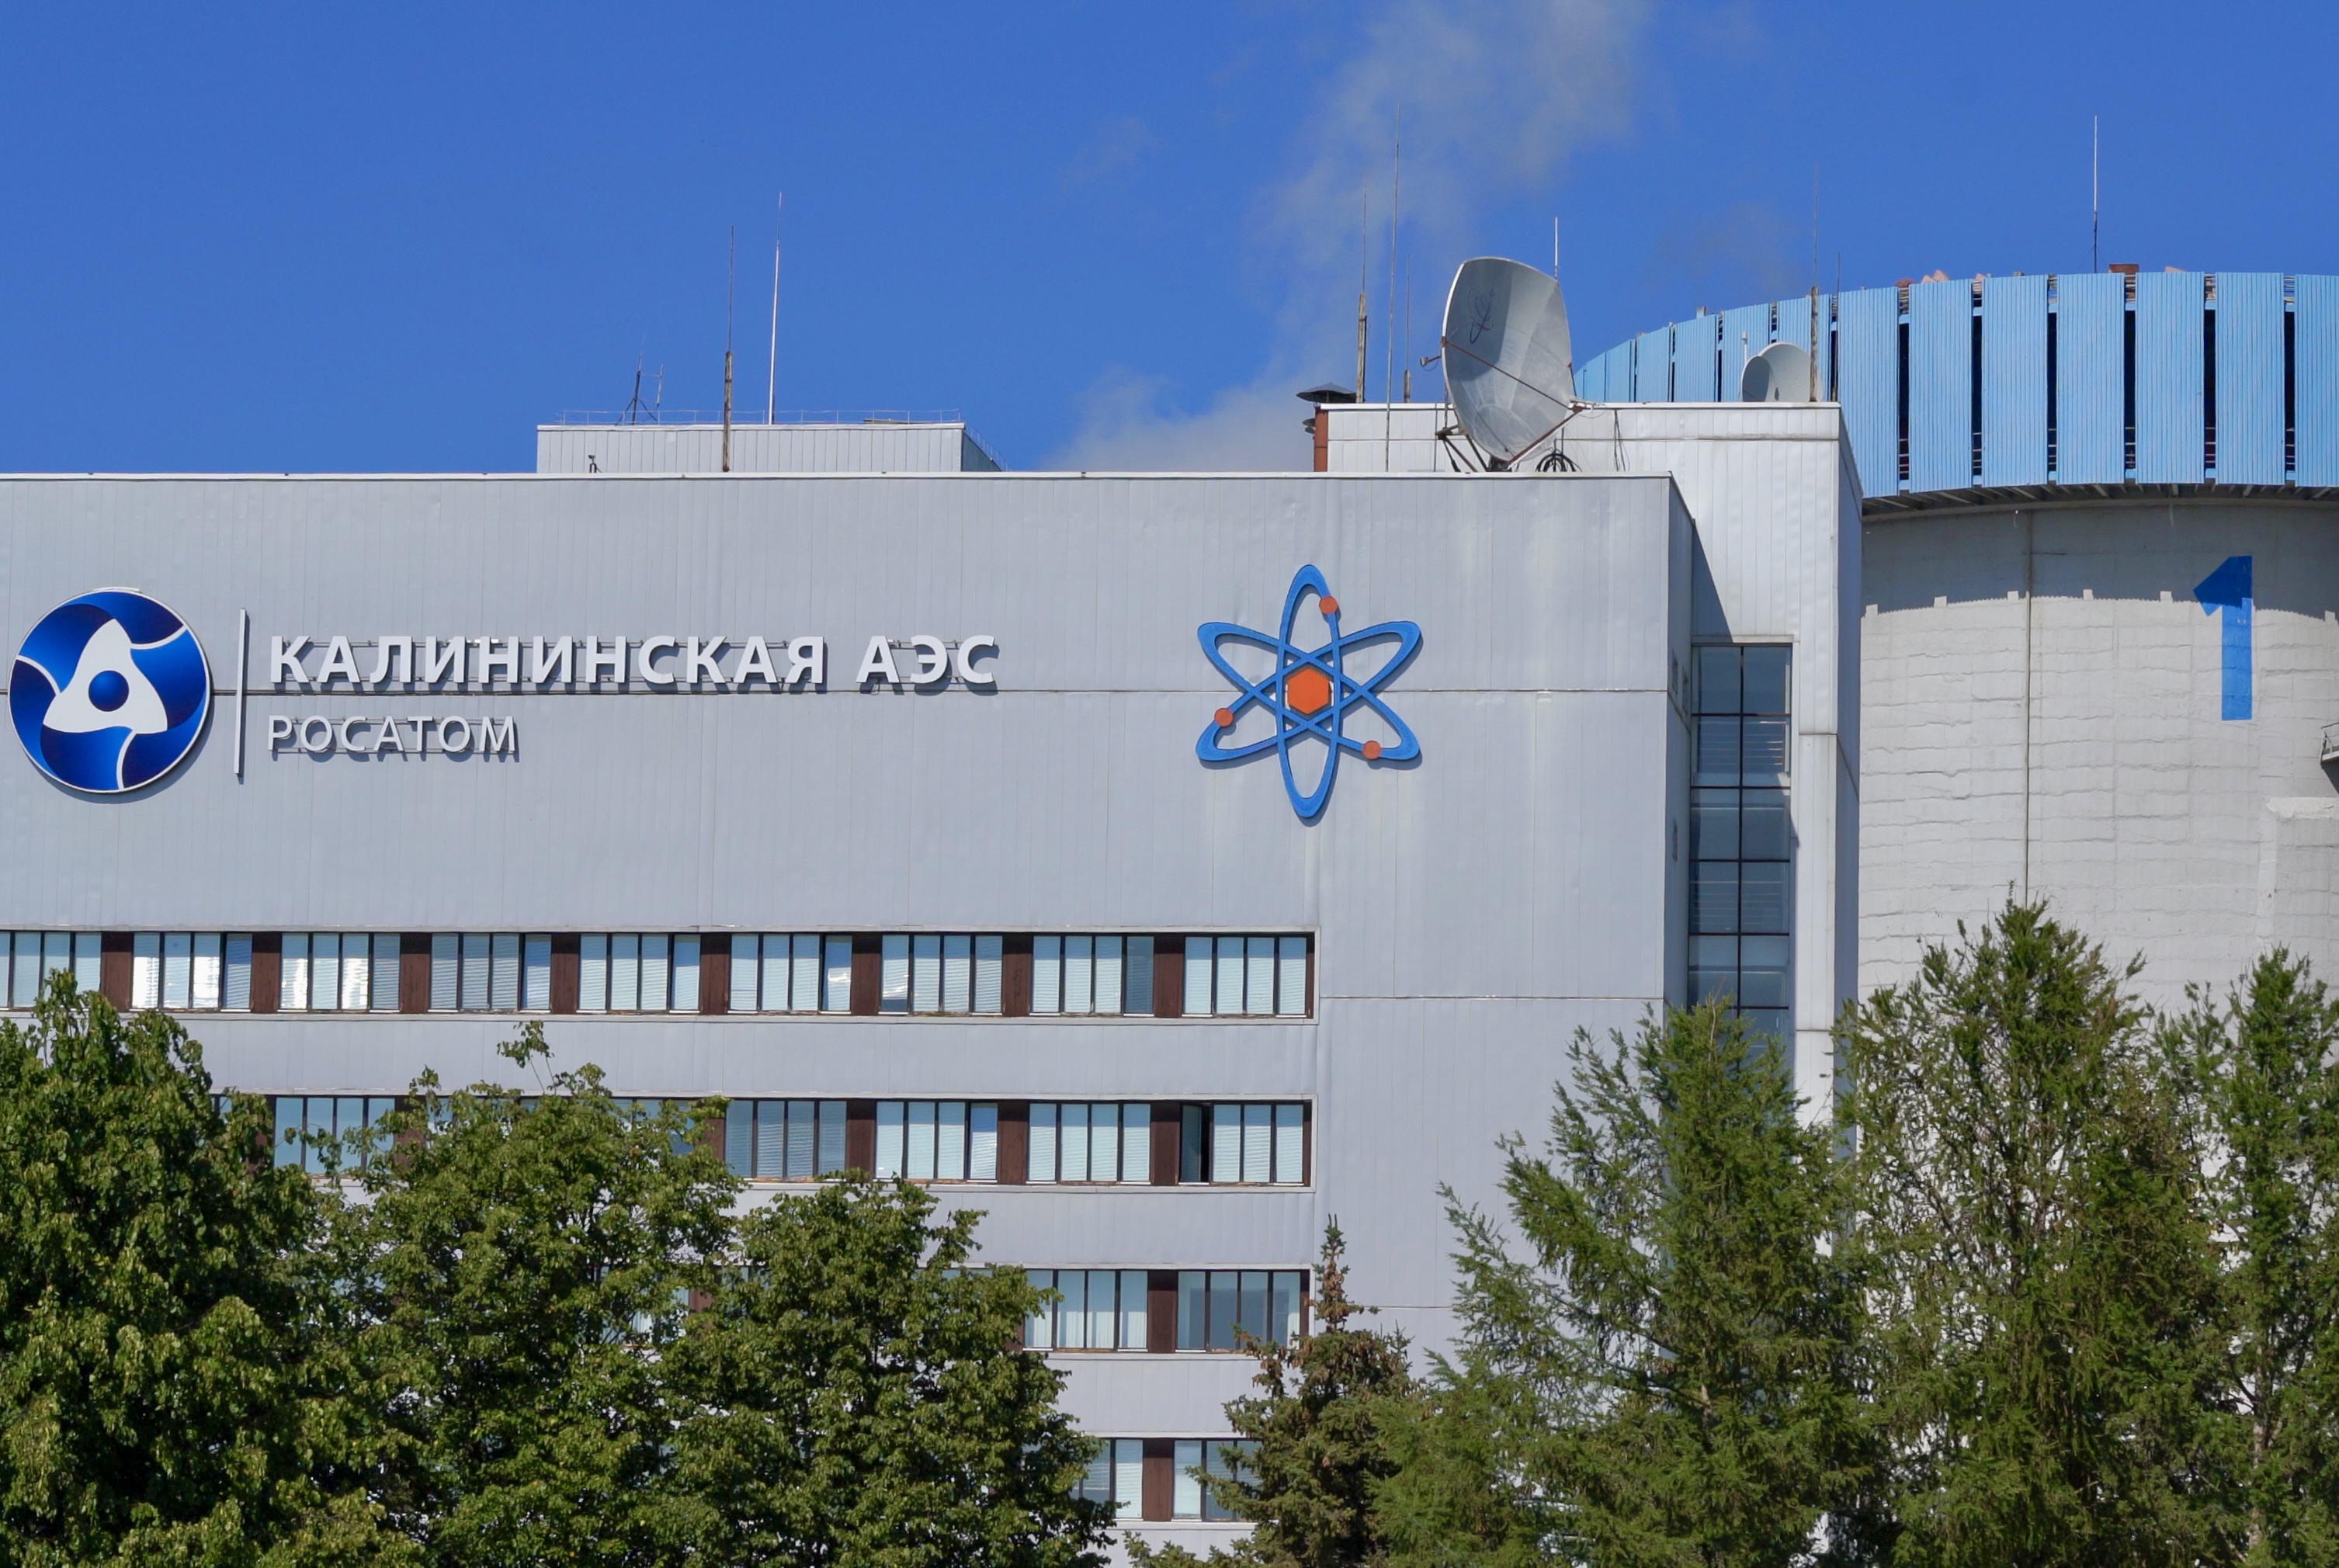 Энергоблок №1 Калининской АЭС включён в сеть после завершения ремонта с модернизацией оборудования